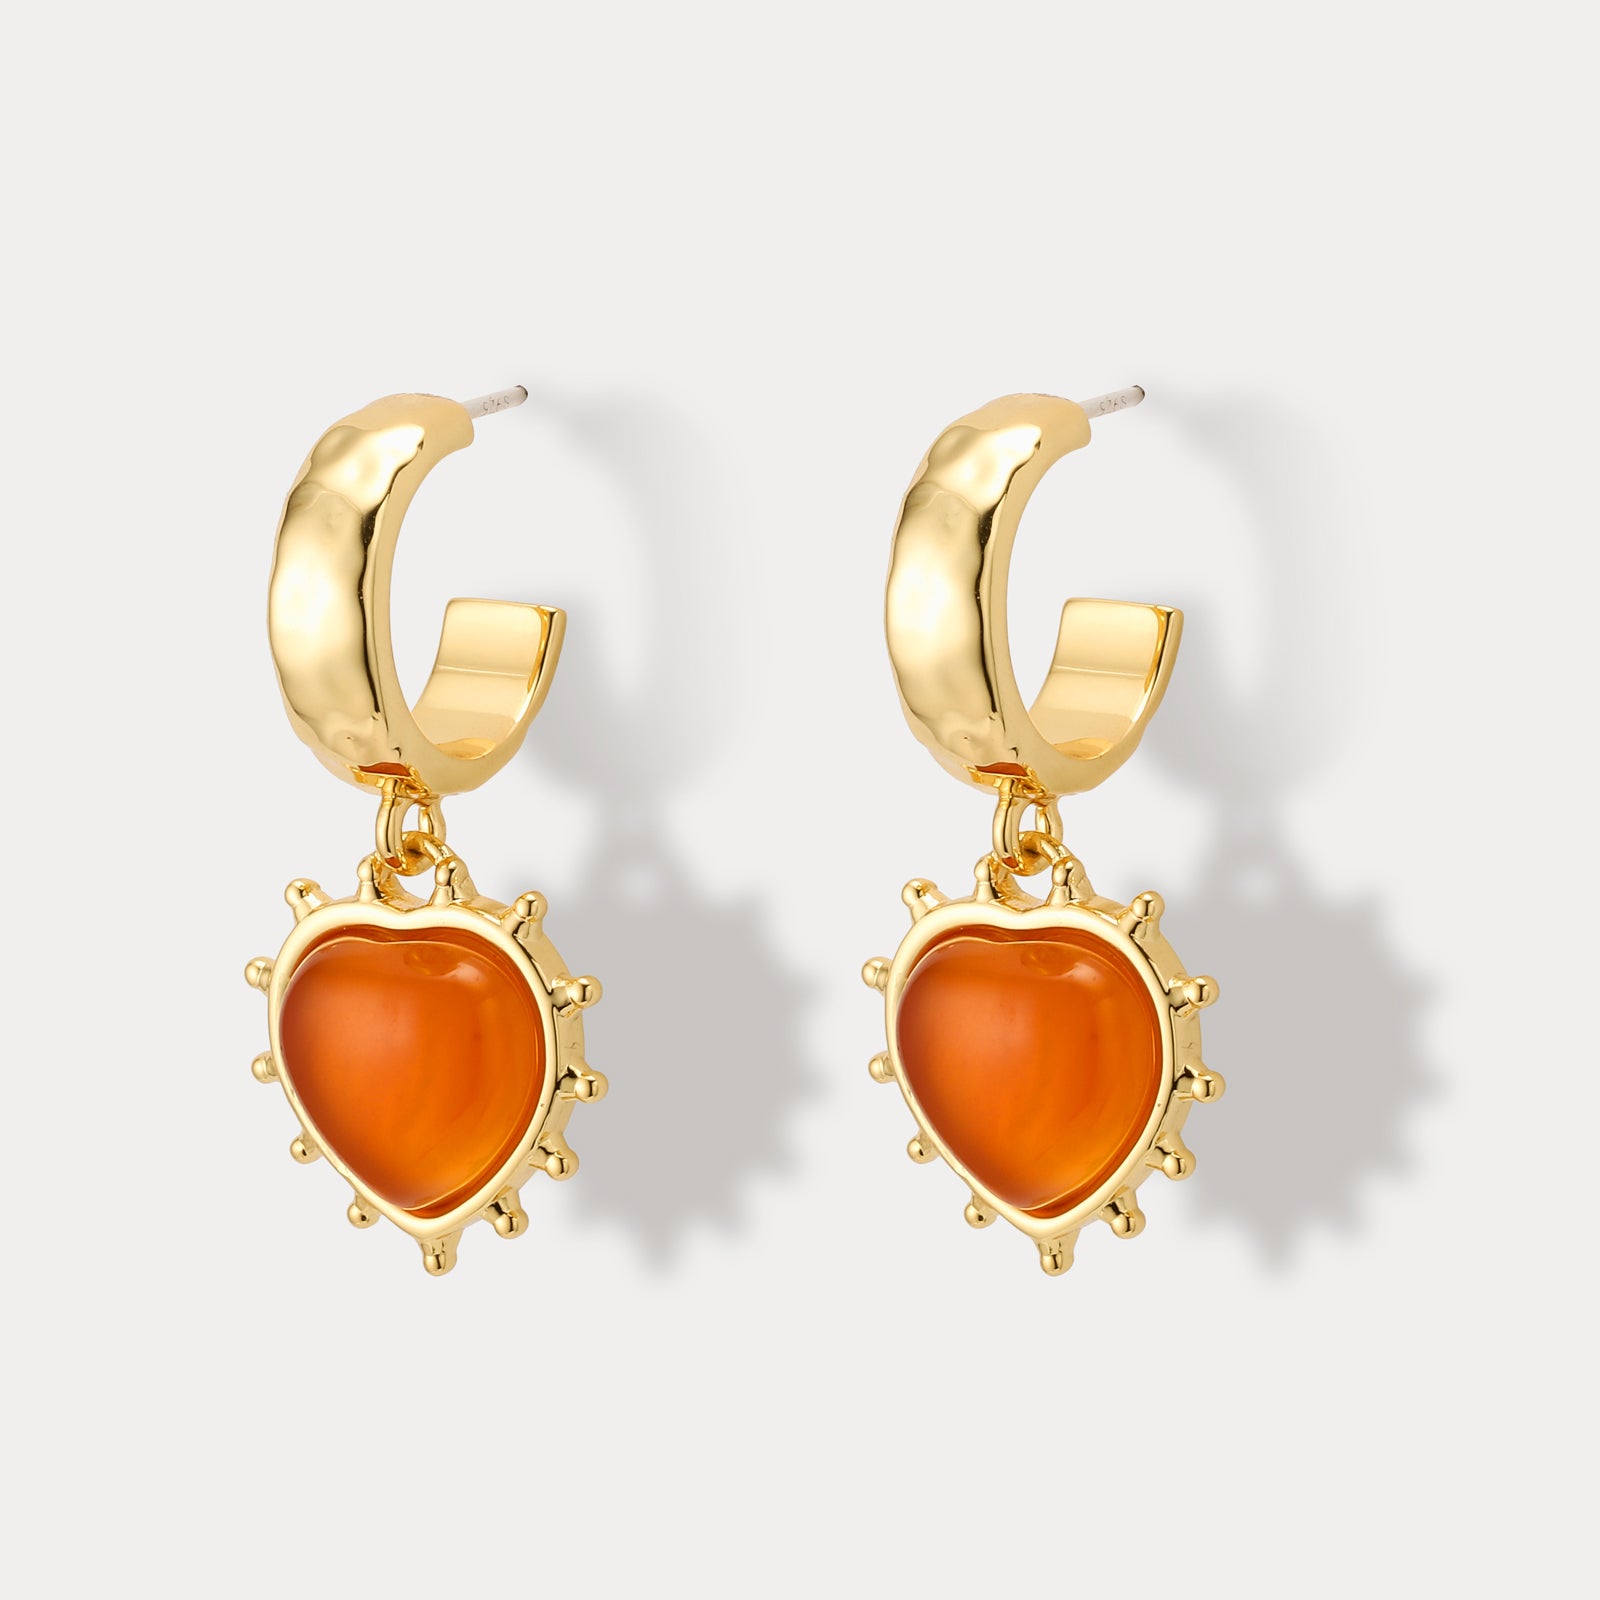 Romantic Heart Orange Dangling Earrings